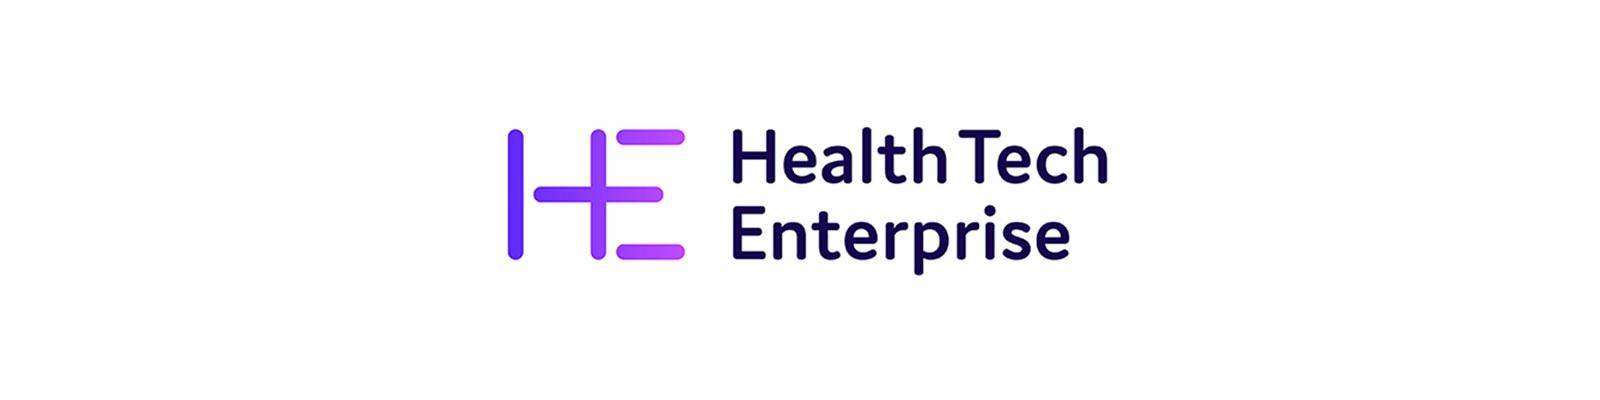 eg technology sponsor Health Tech Enterprise Innovation Voucher as part of MedTech Futures Event